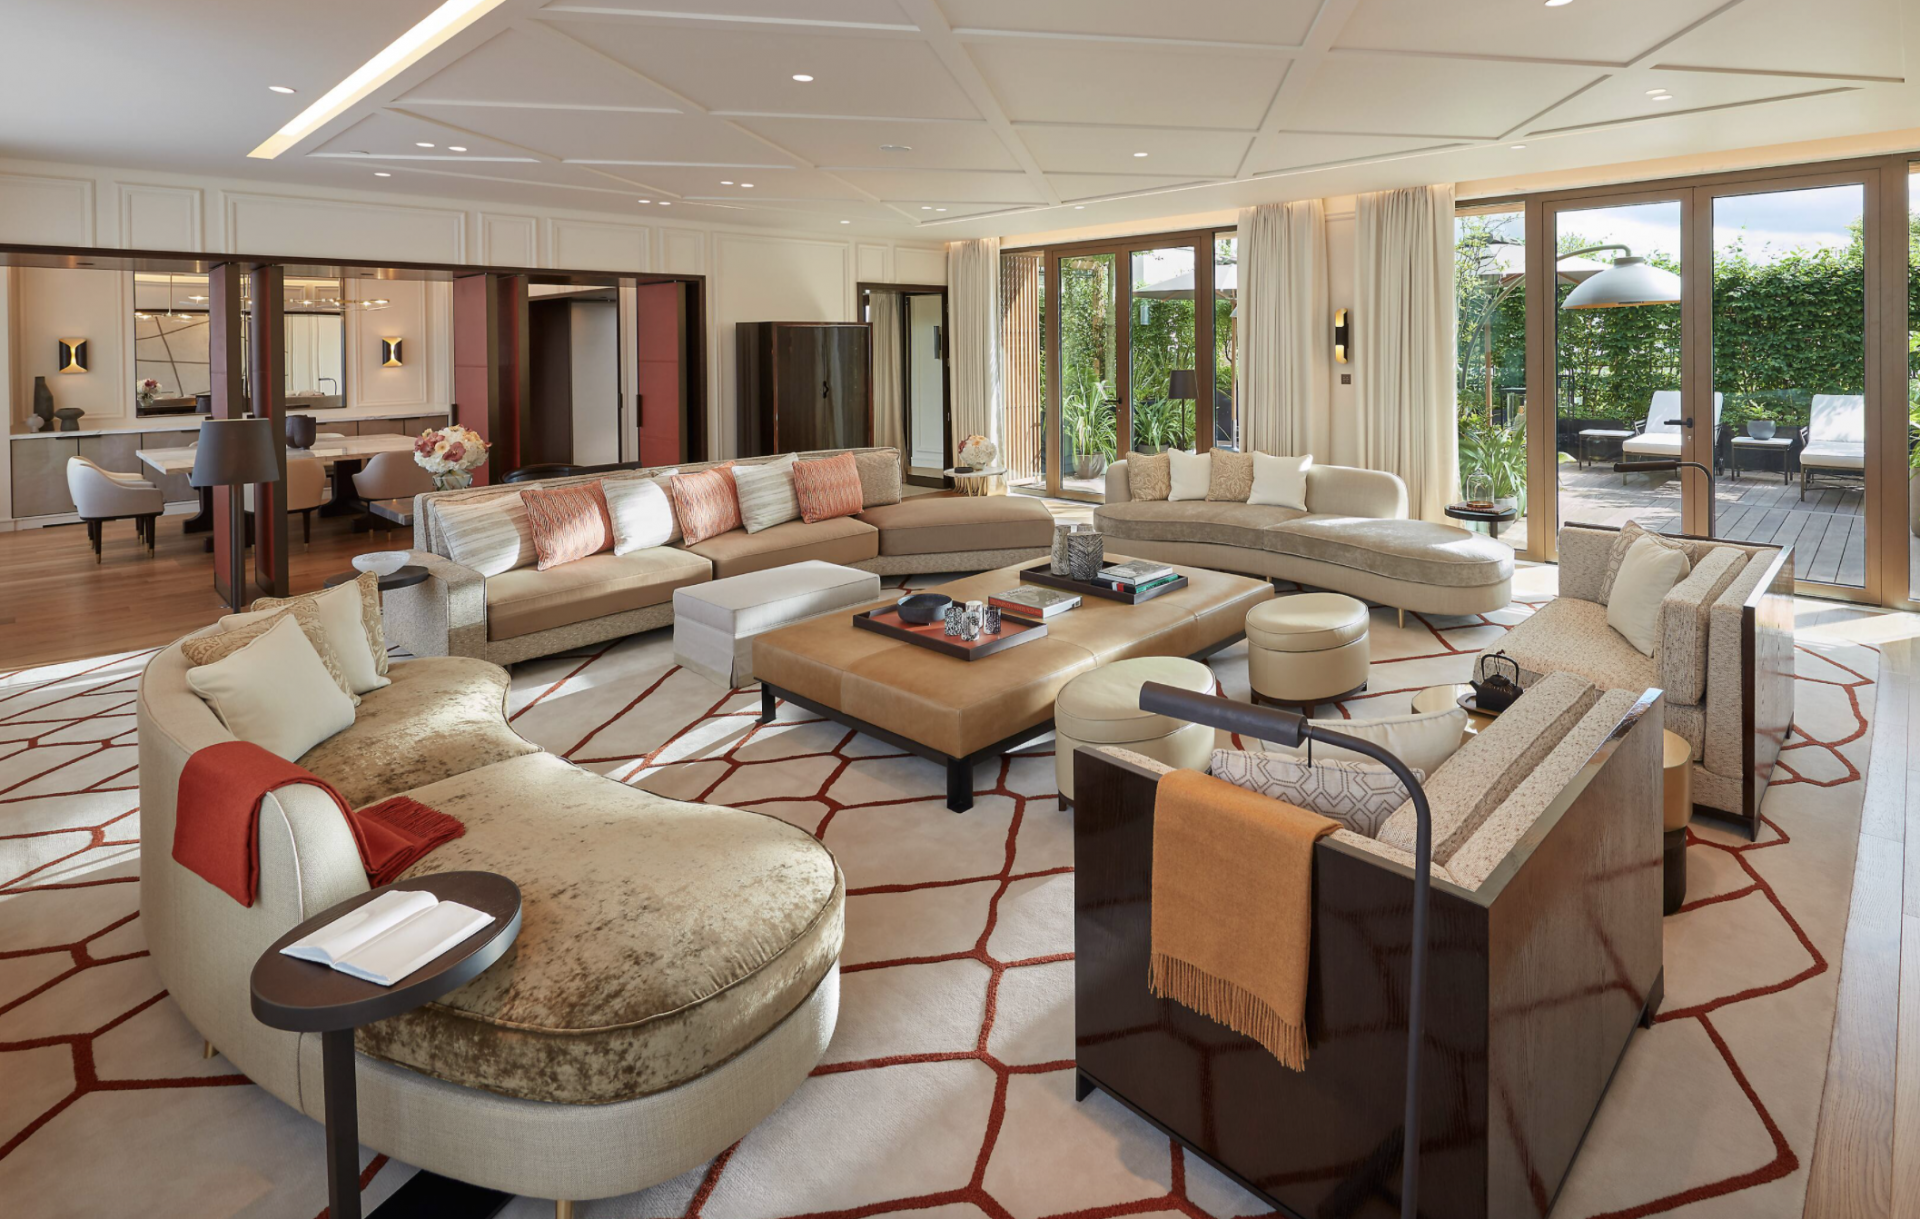 Mandarin oriental Paris, penthouse suite